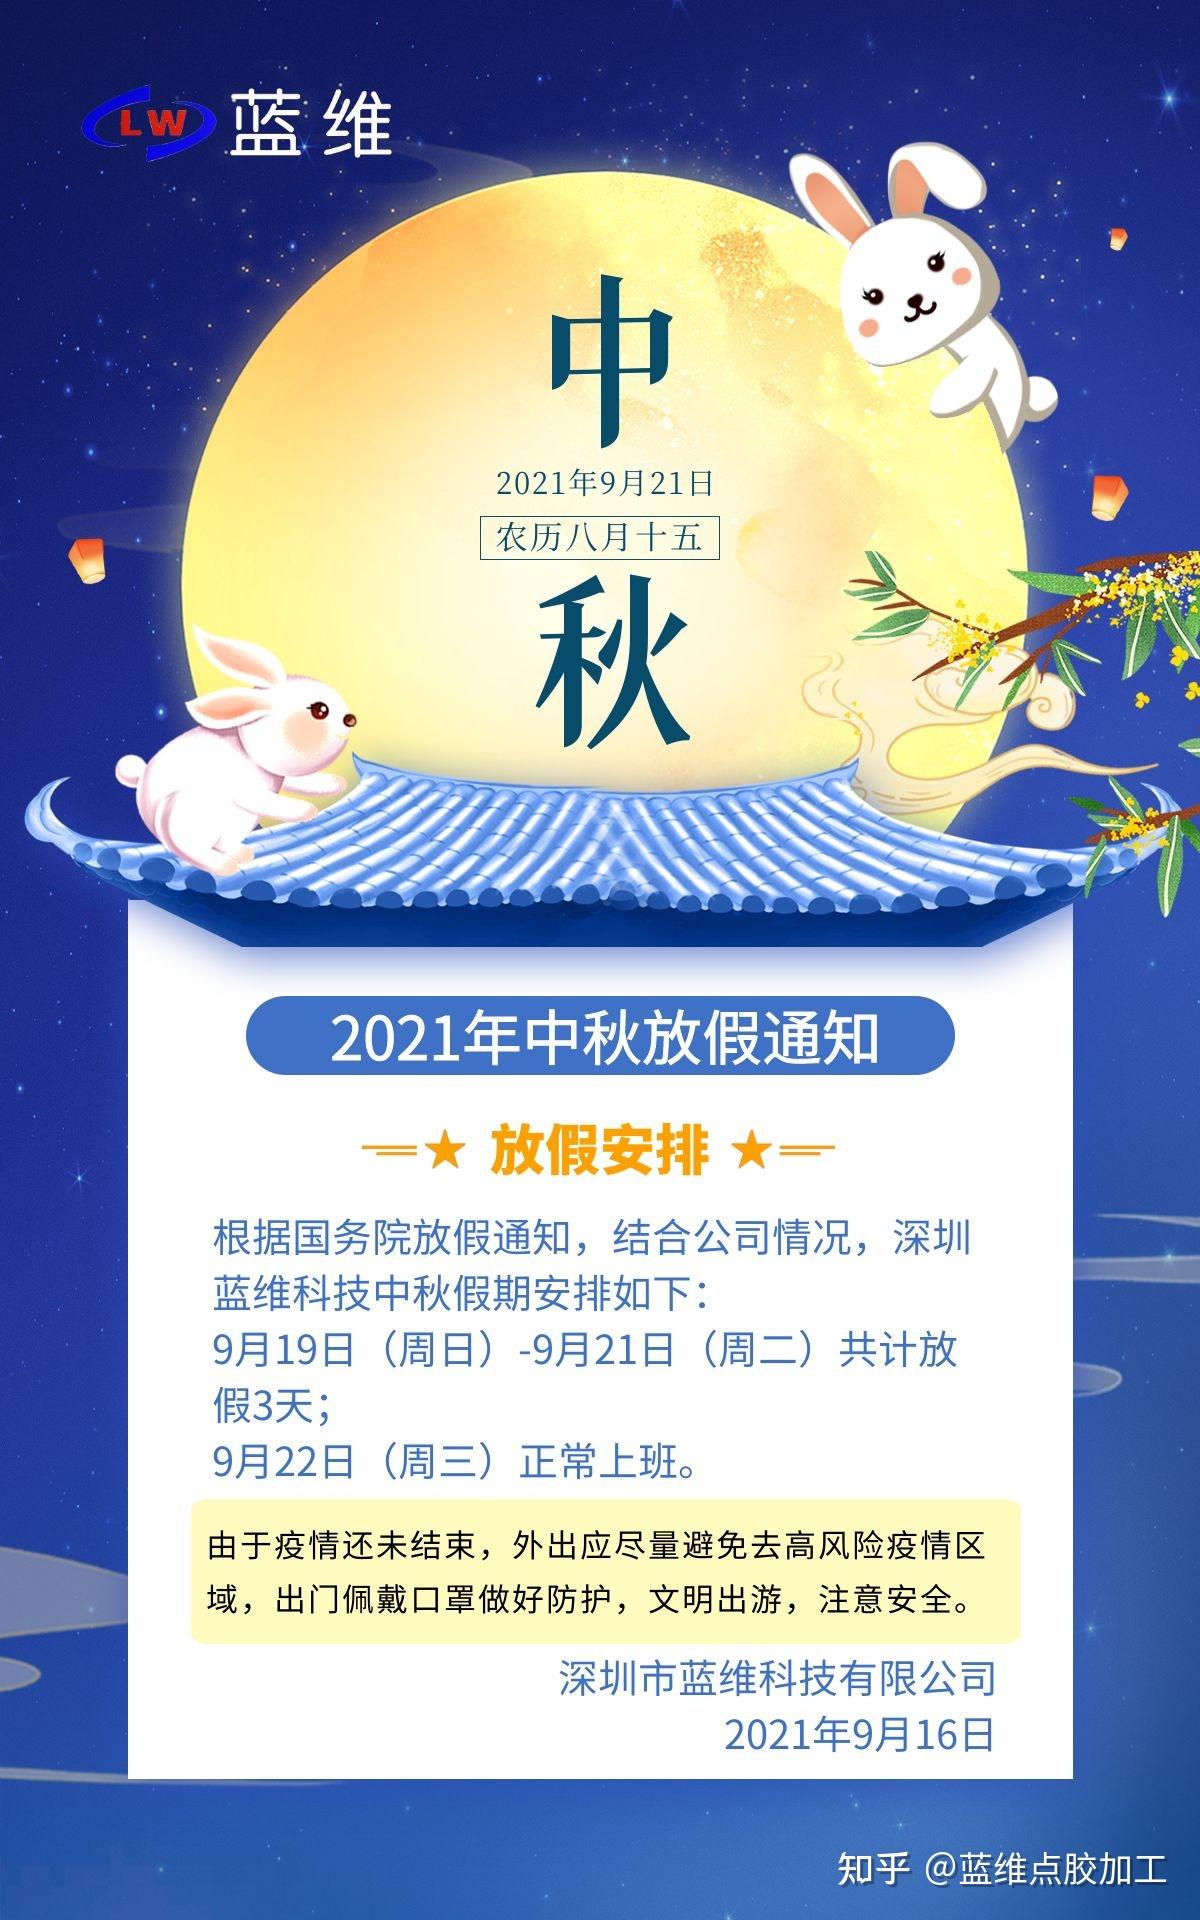 蓝维科技2021年中秋节放假安排通知